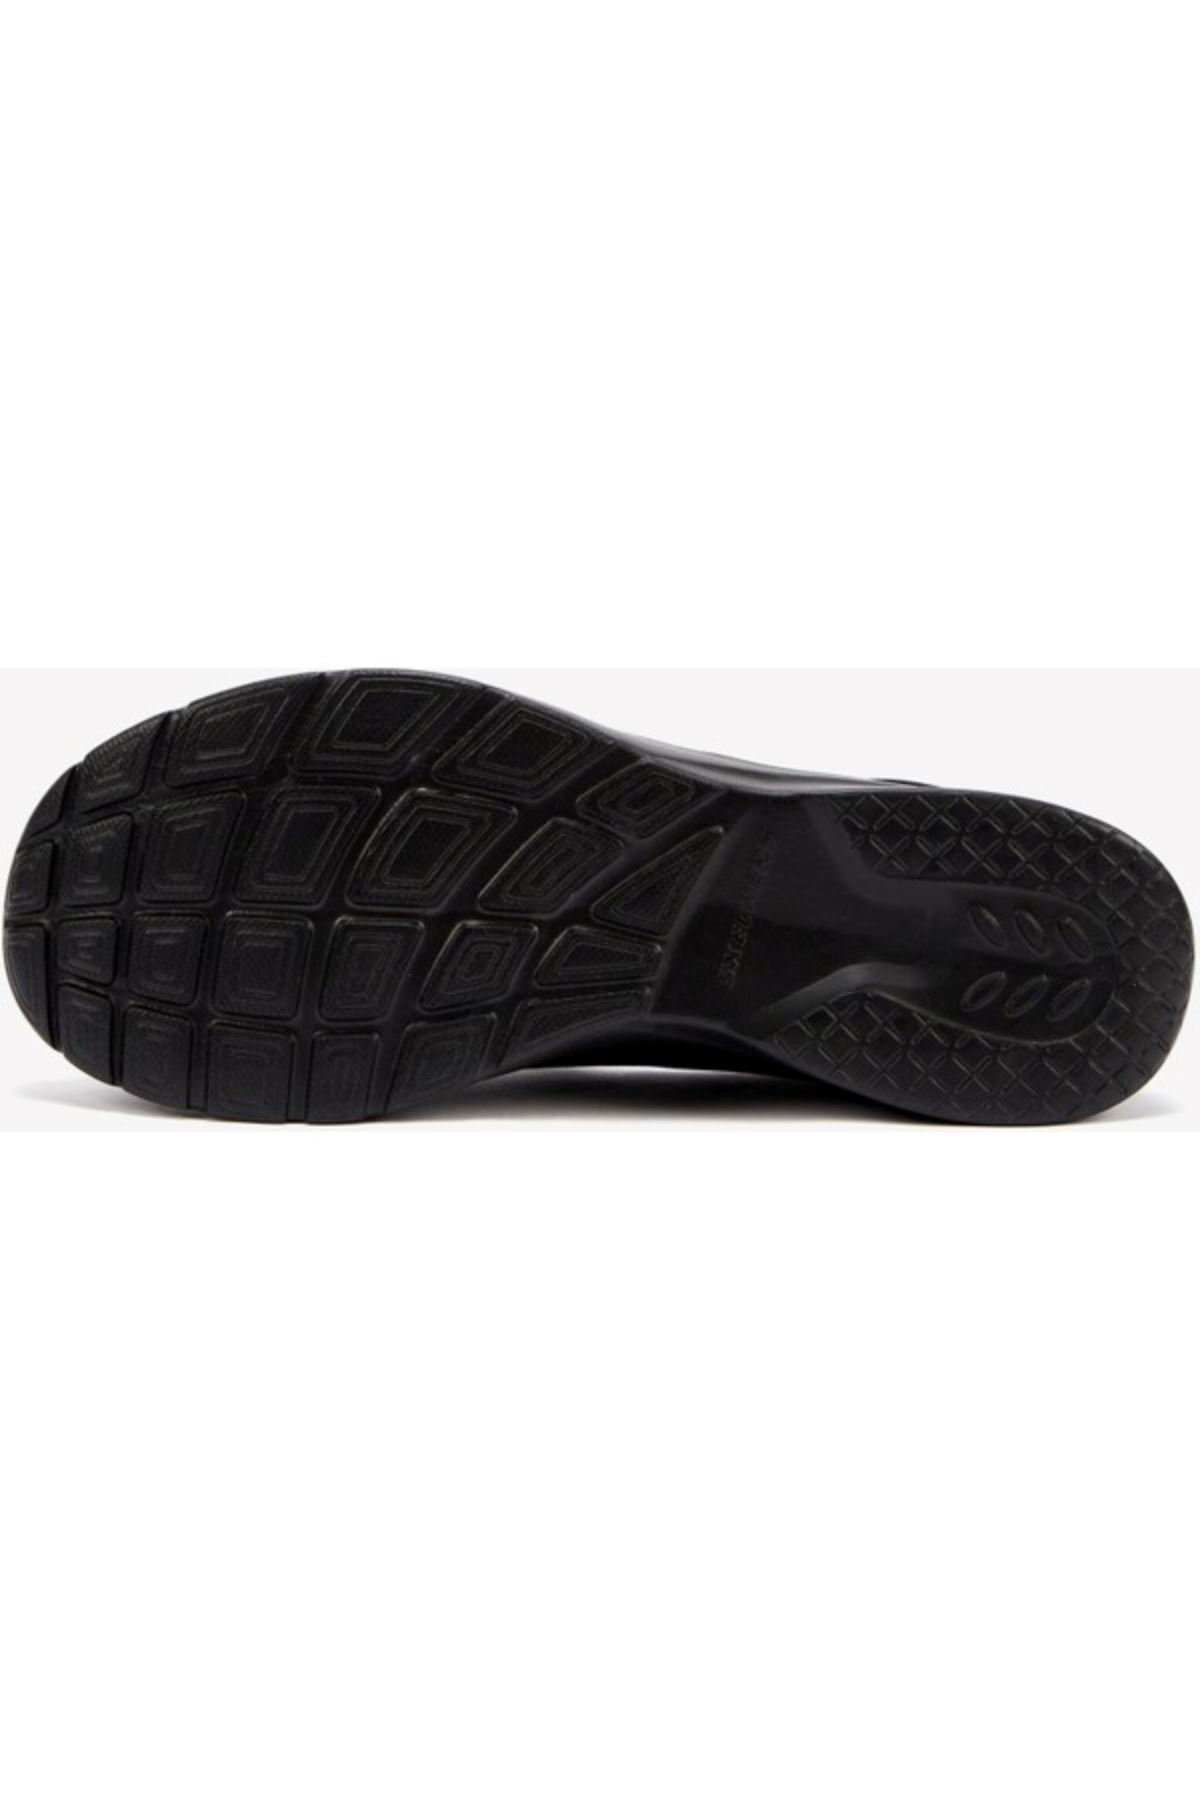 BBK Skechers Dynamıght 2.0 Kadın Siyah Spor Ayakkabı - 896119TK